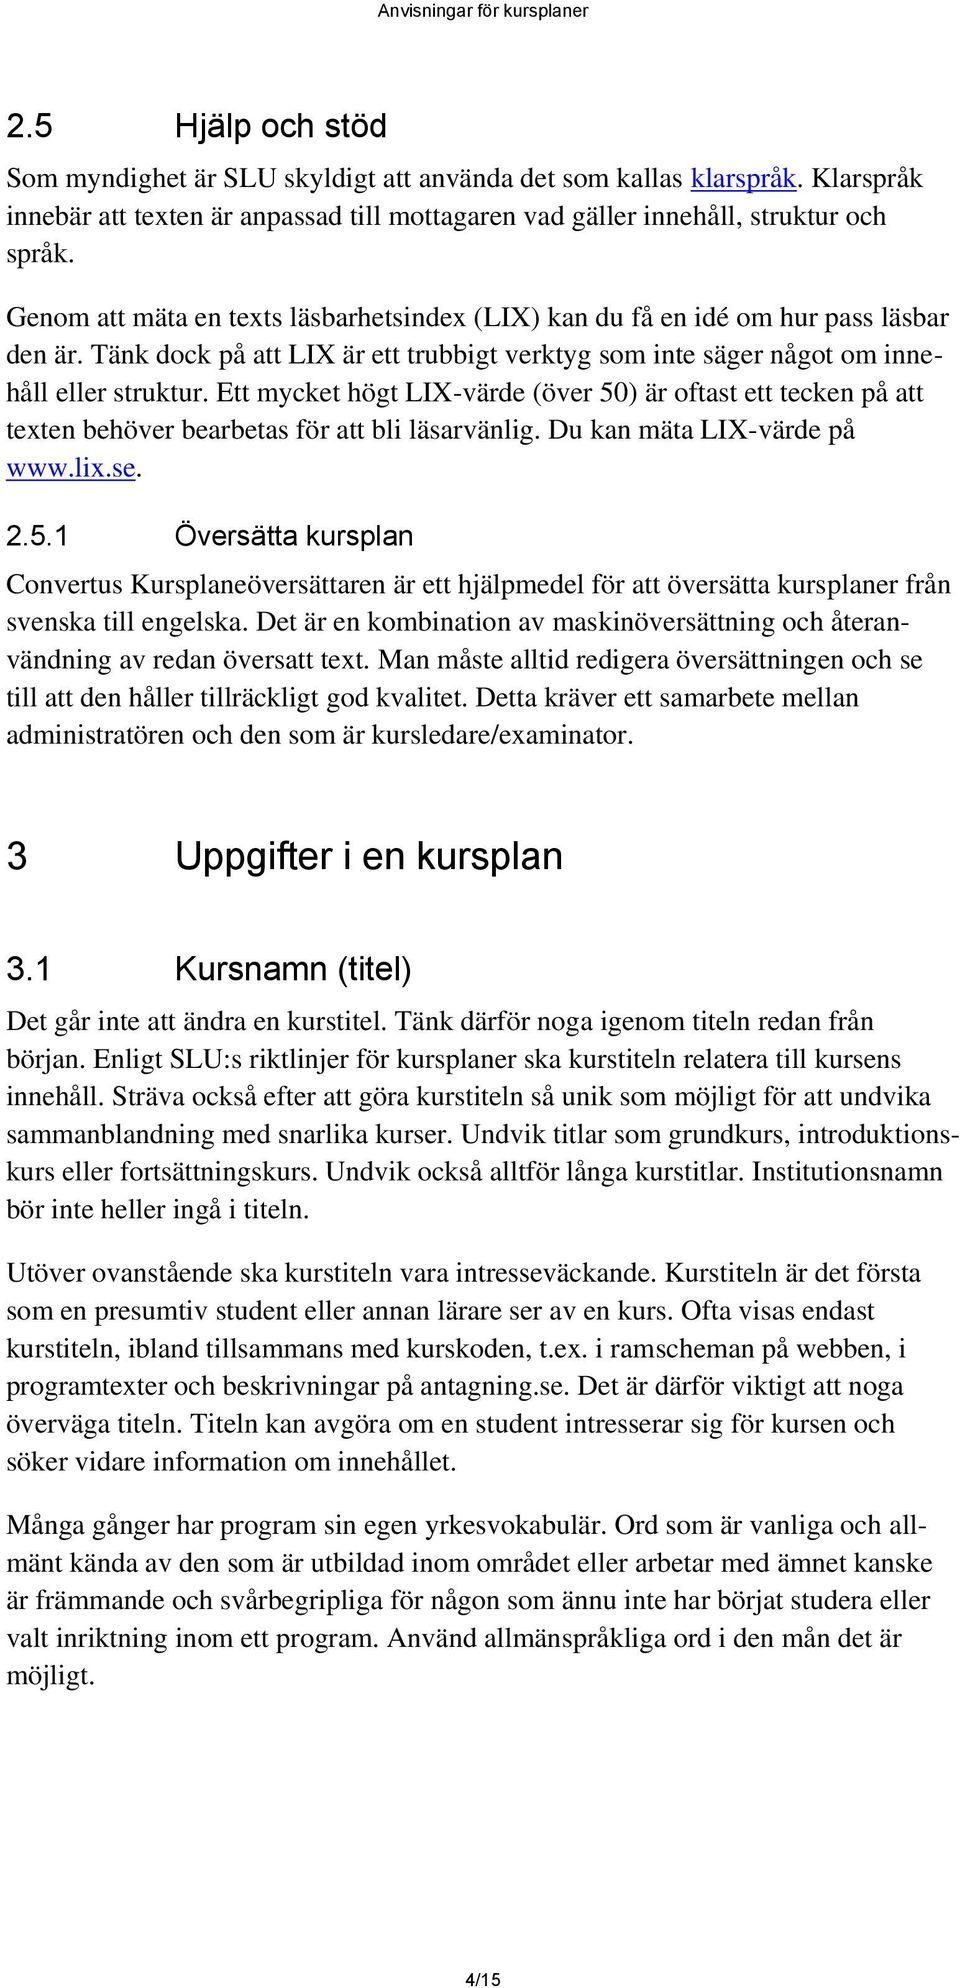 Ett mycket högt LIX-värde (över 50) är oftast ett tecken på att texten behöver bearbetas för att bli läsarvänlig. Du kan mäta LIX-värde på www.lix.se. 2.5.1 Översätta kursplan Convertus Kursplaneöversättaren är ett hjälpmedel för att översätta kursplaner från svenska till engelska.